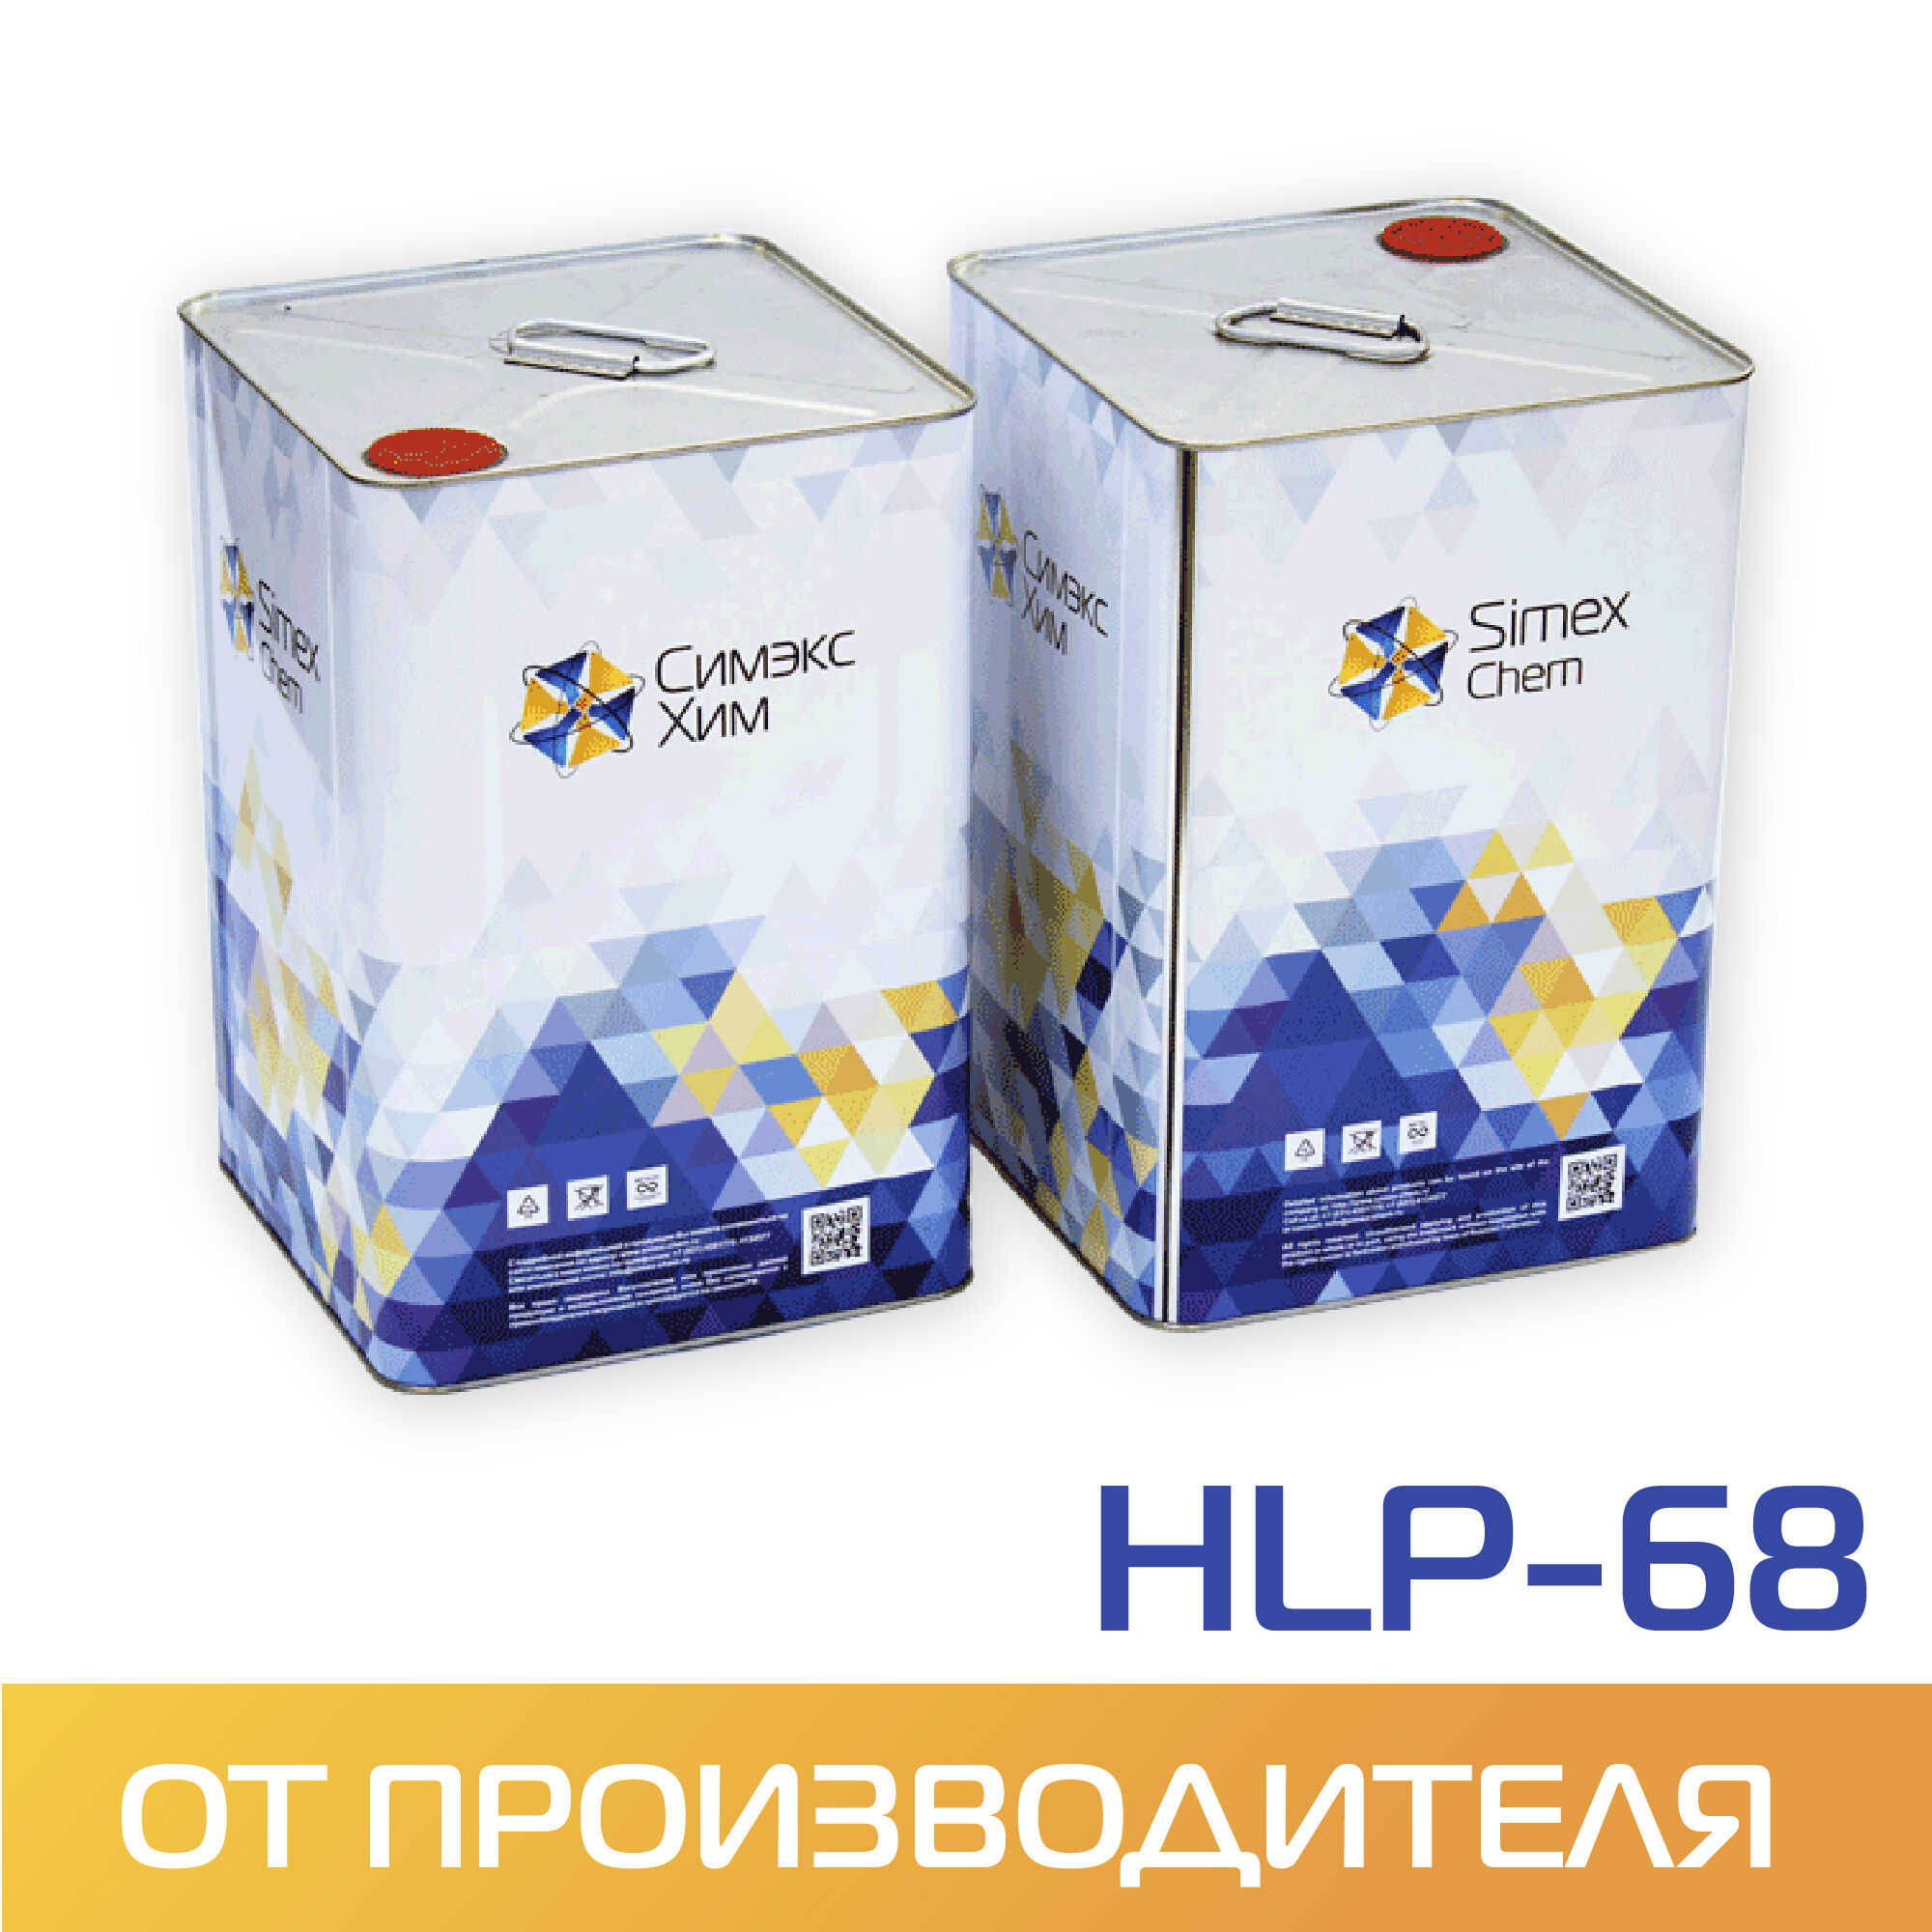 Масло гидравлическое HLP-68 бидон 15 кг